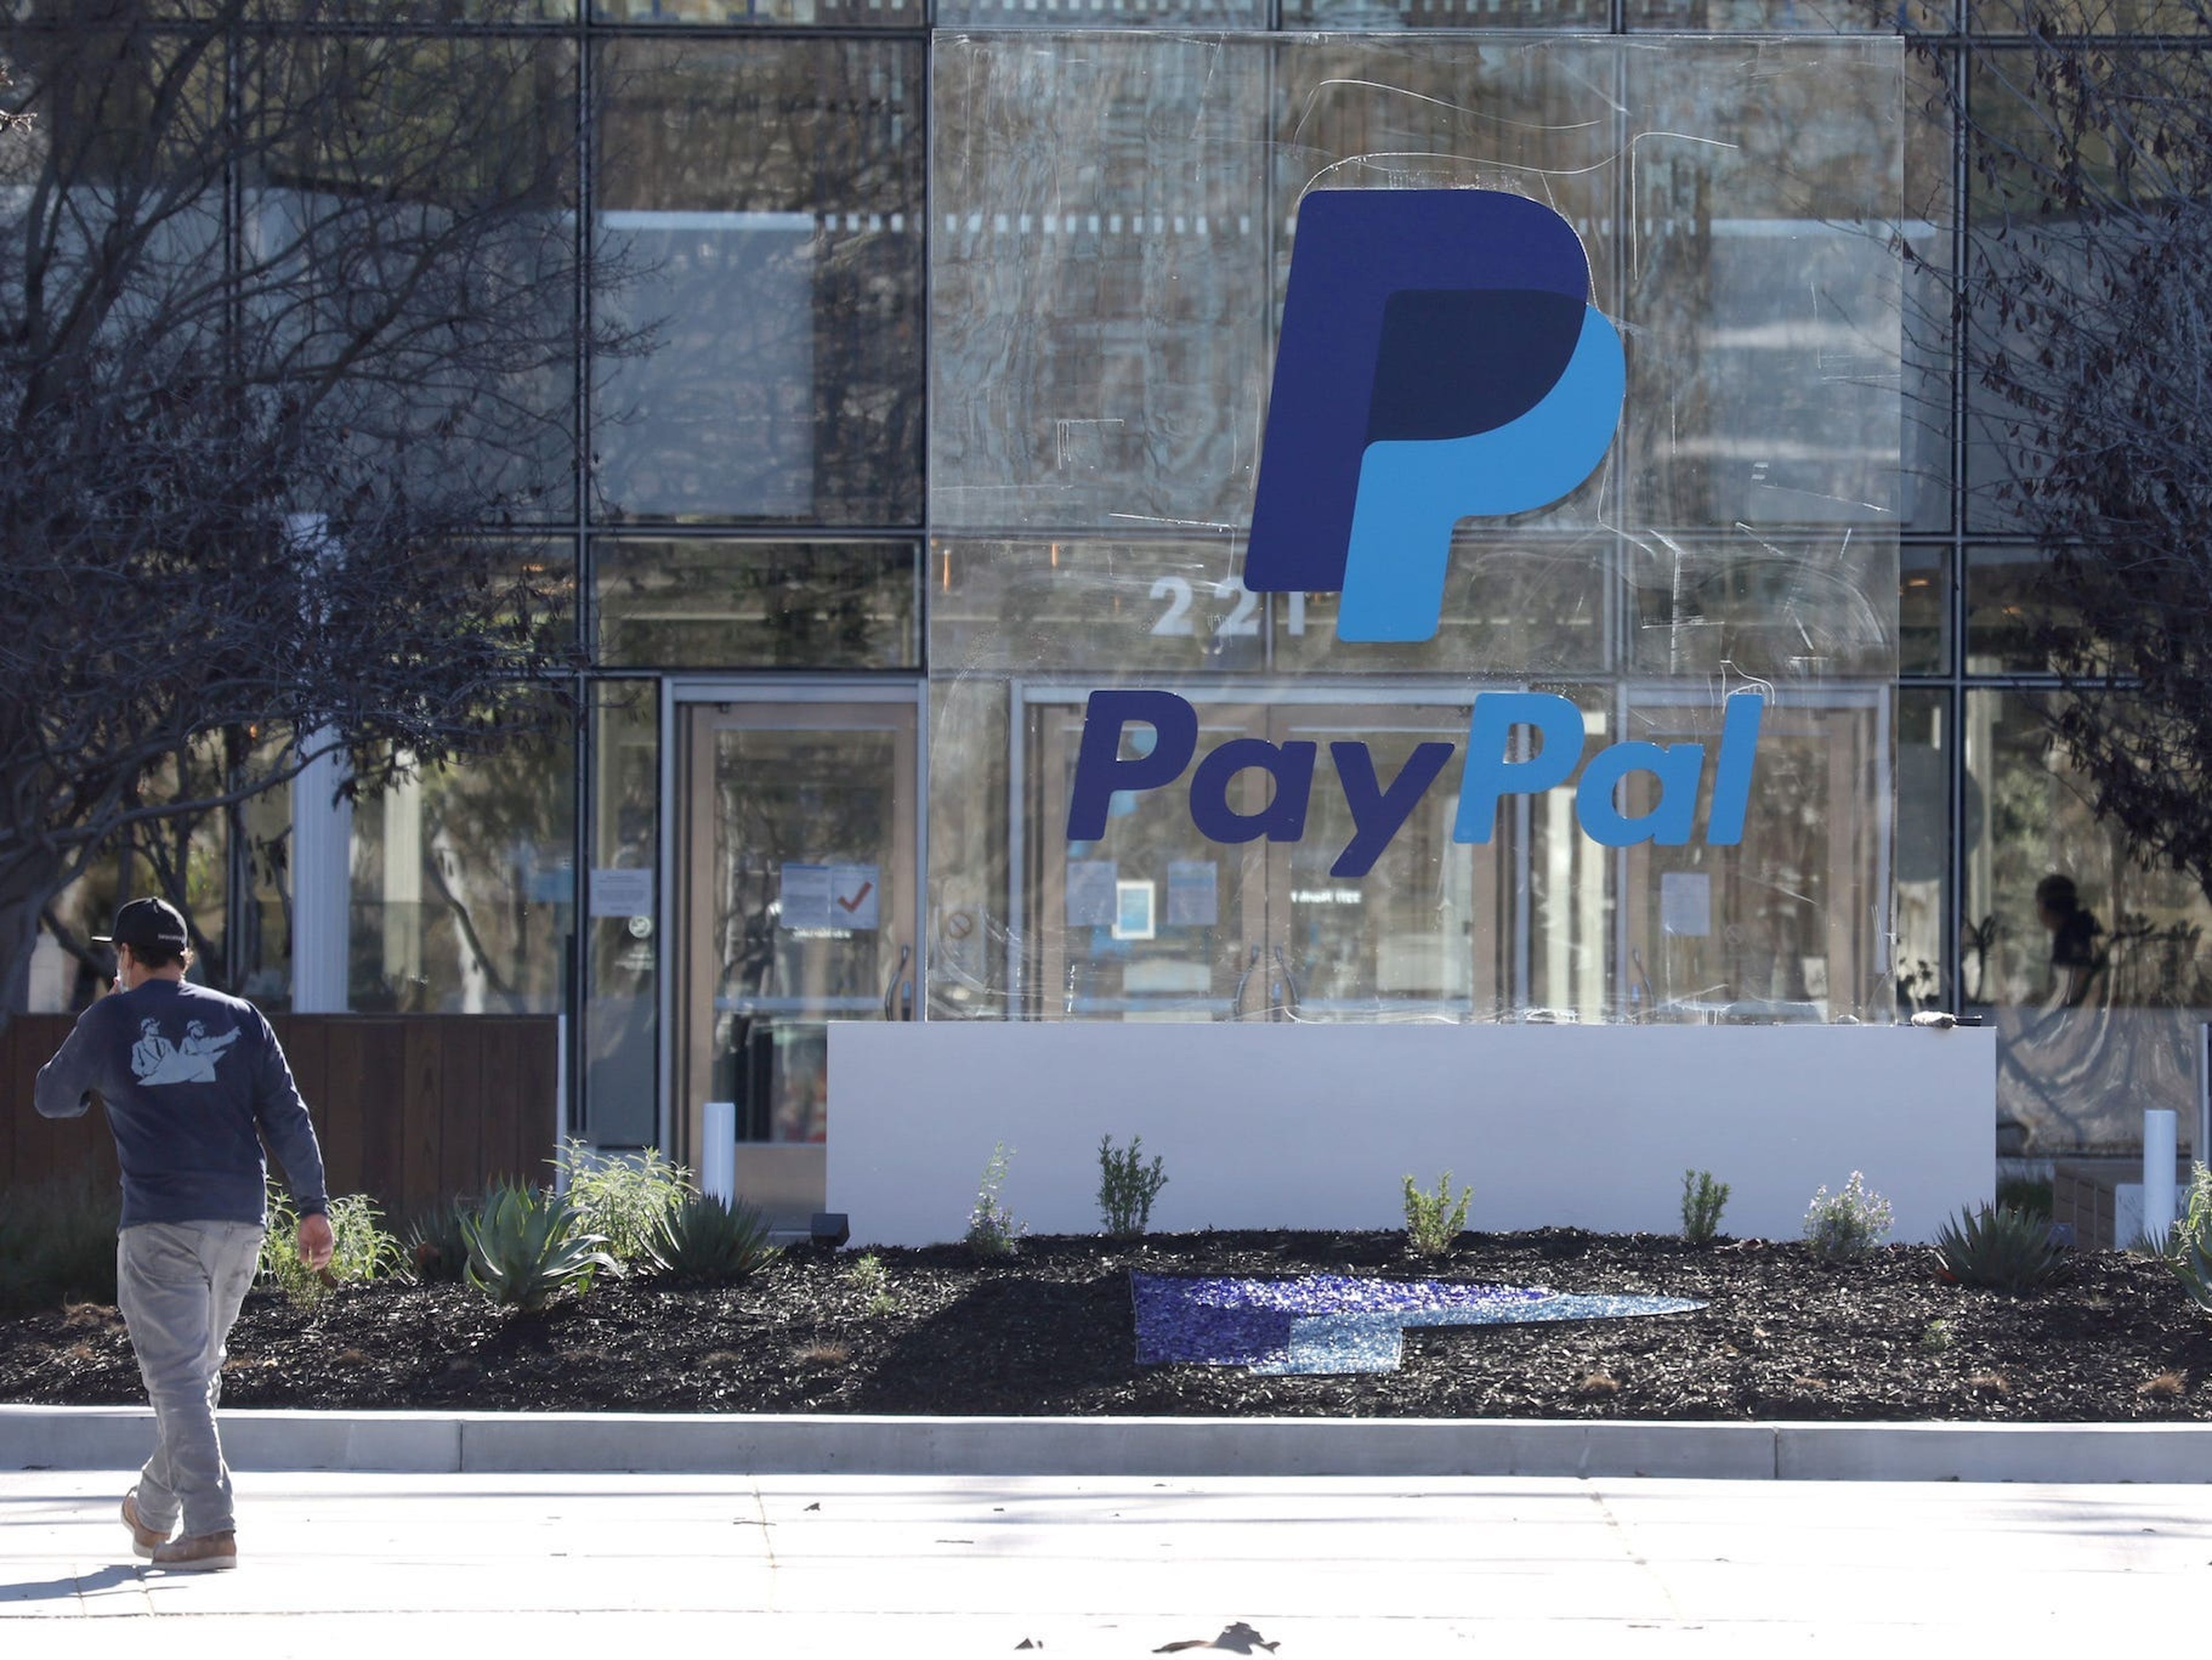 El programa de prácticas de PayPal es muy competitivo, con sólo unas pocas plazas para miles de candidatos.